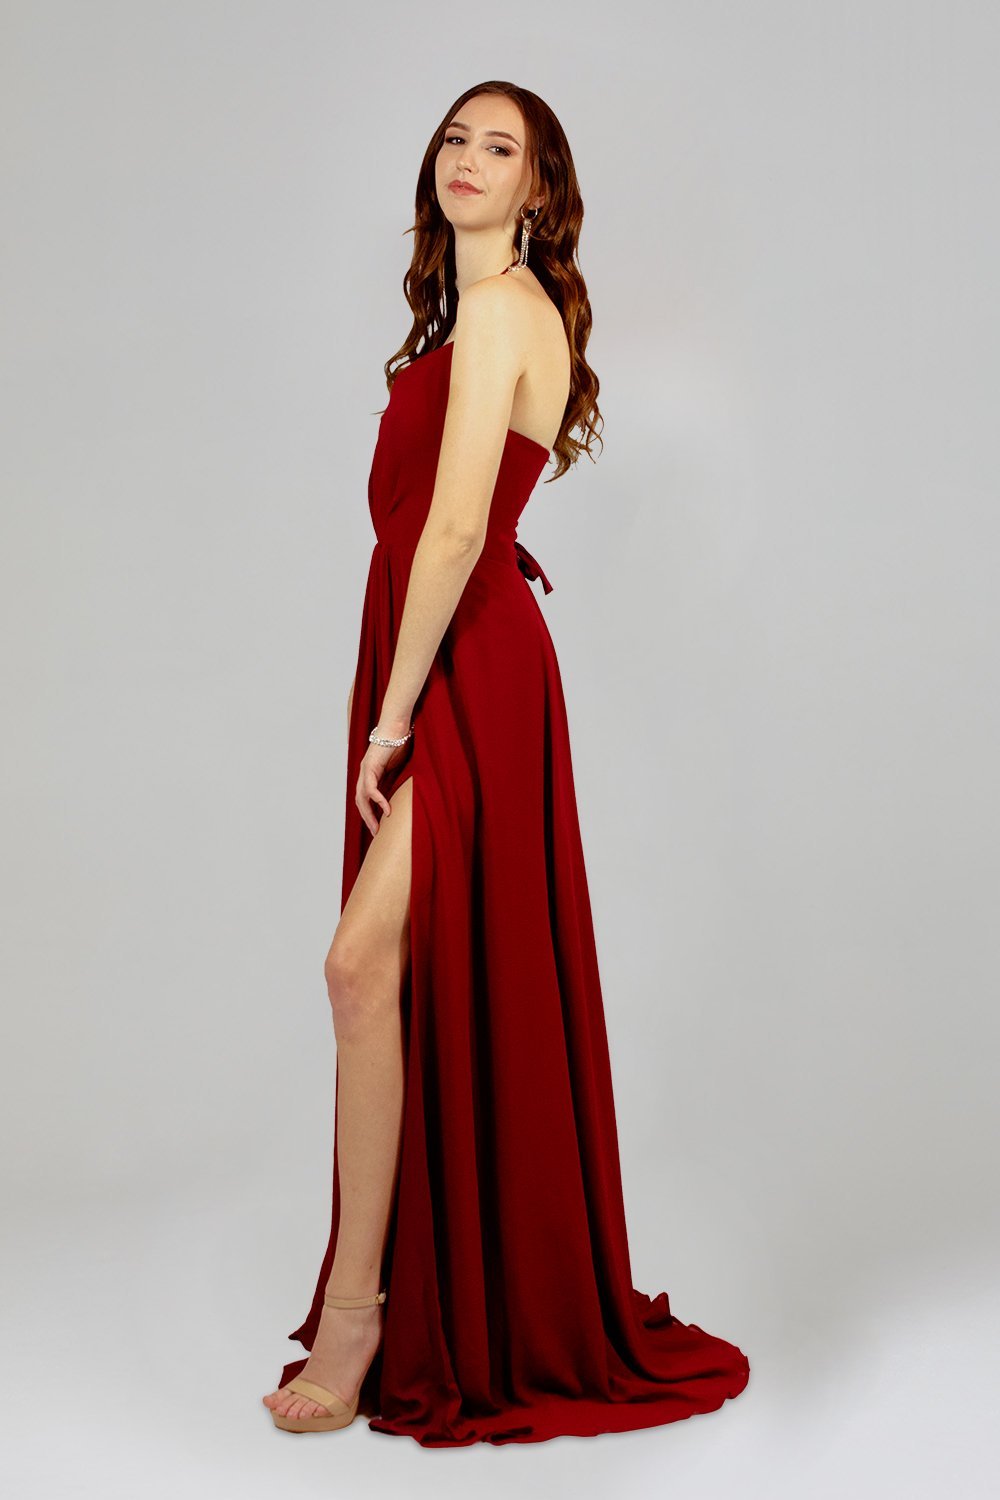 custom burgundy chiffon bridesmaid dresses perth australia enviou sbridal & formal